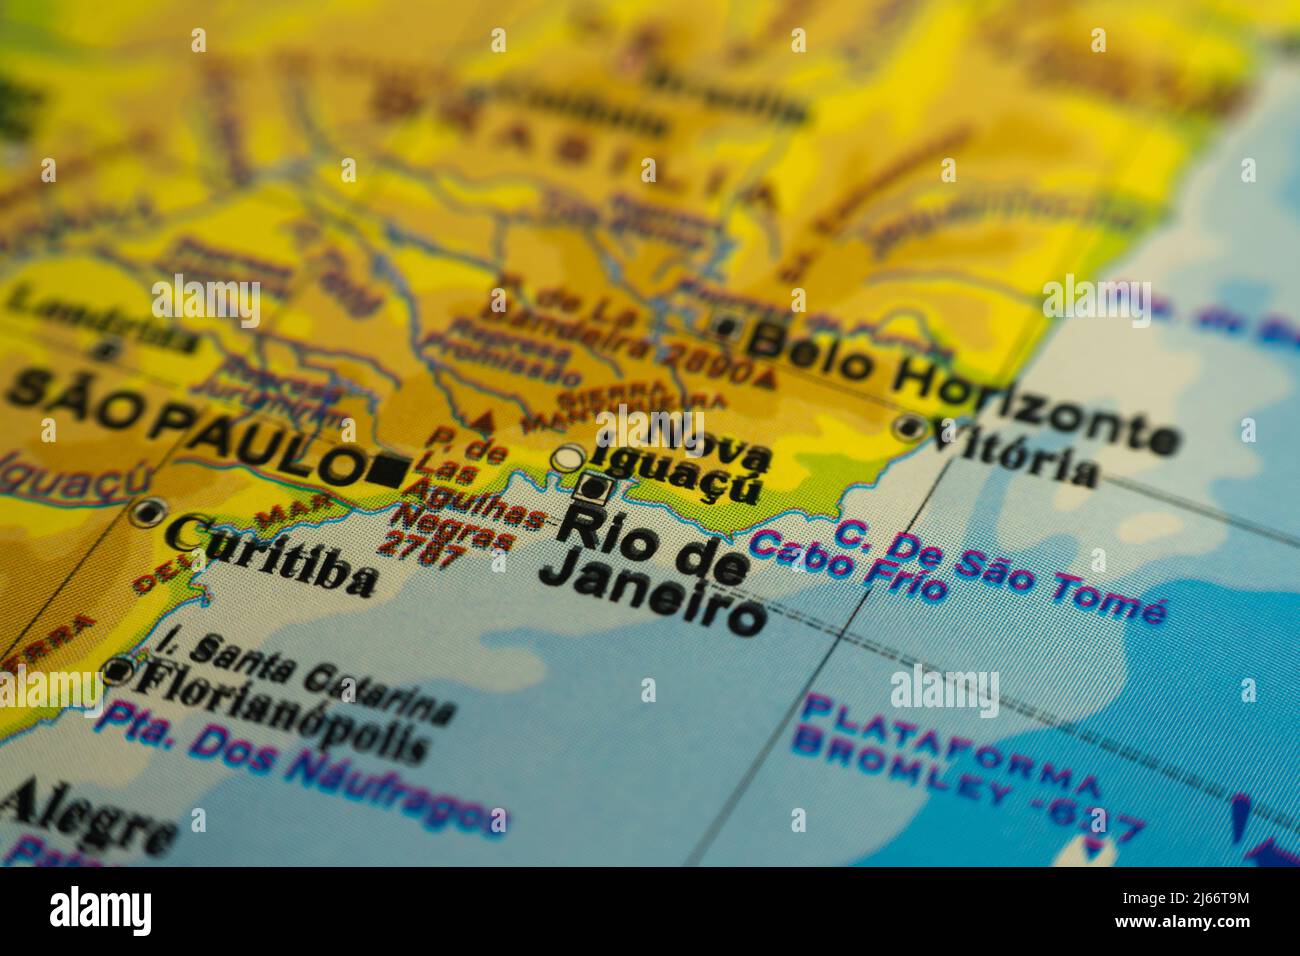 Mapa orográfico del área de Río de Janeiro en Brasil, con referencias en español. Concepto de cartografía, viajes, turismo, geografía. Diferencial f Foto de stock